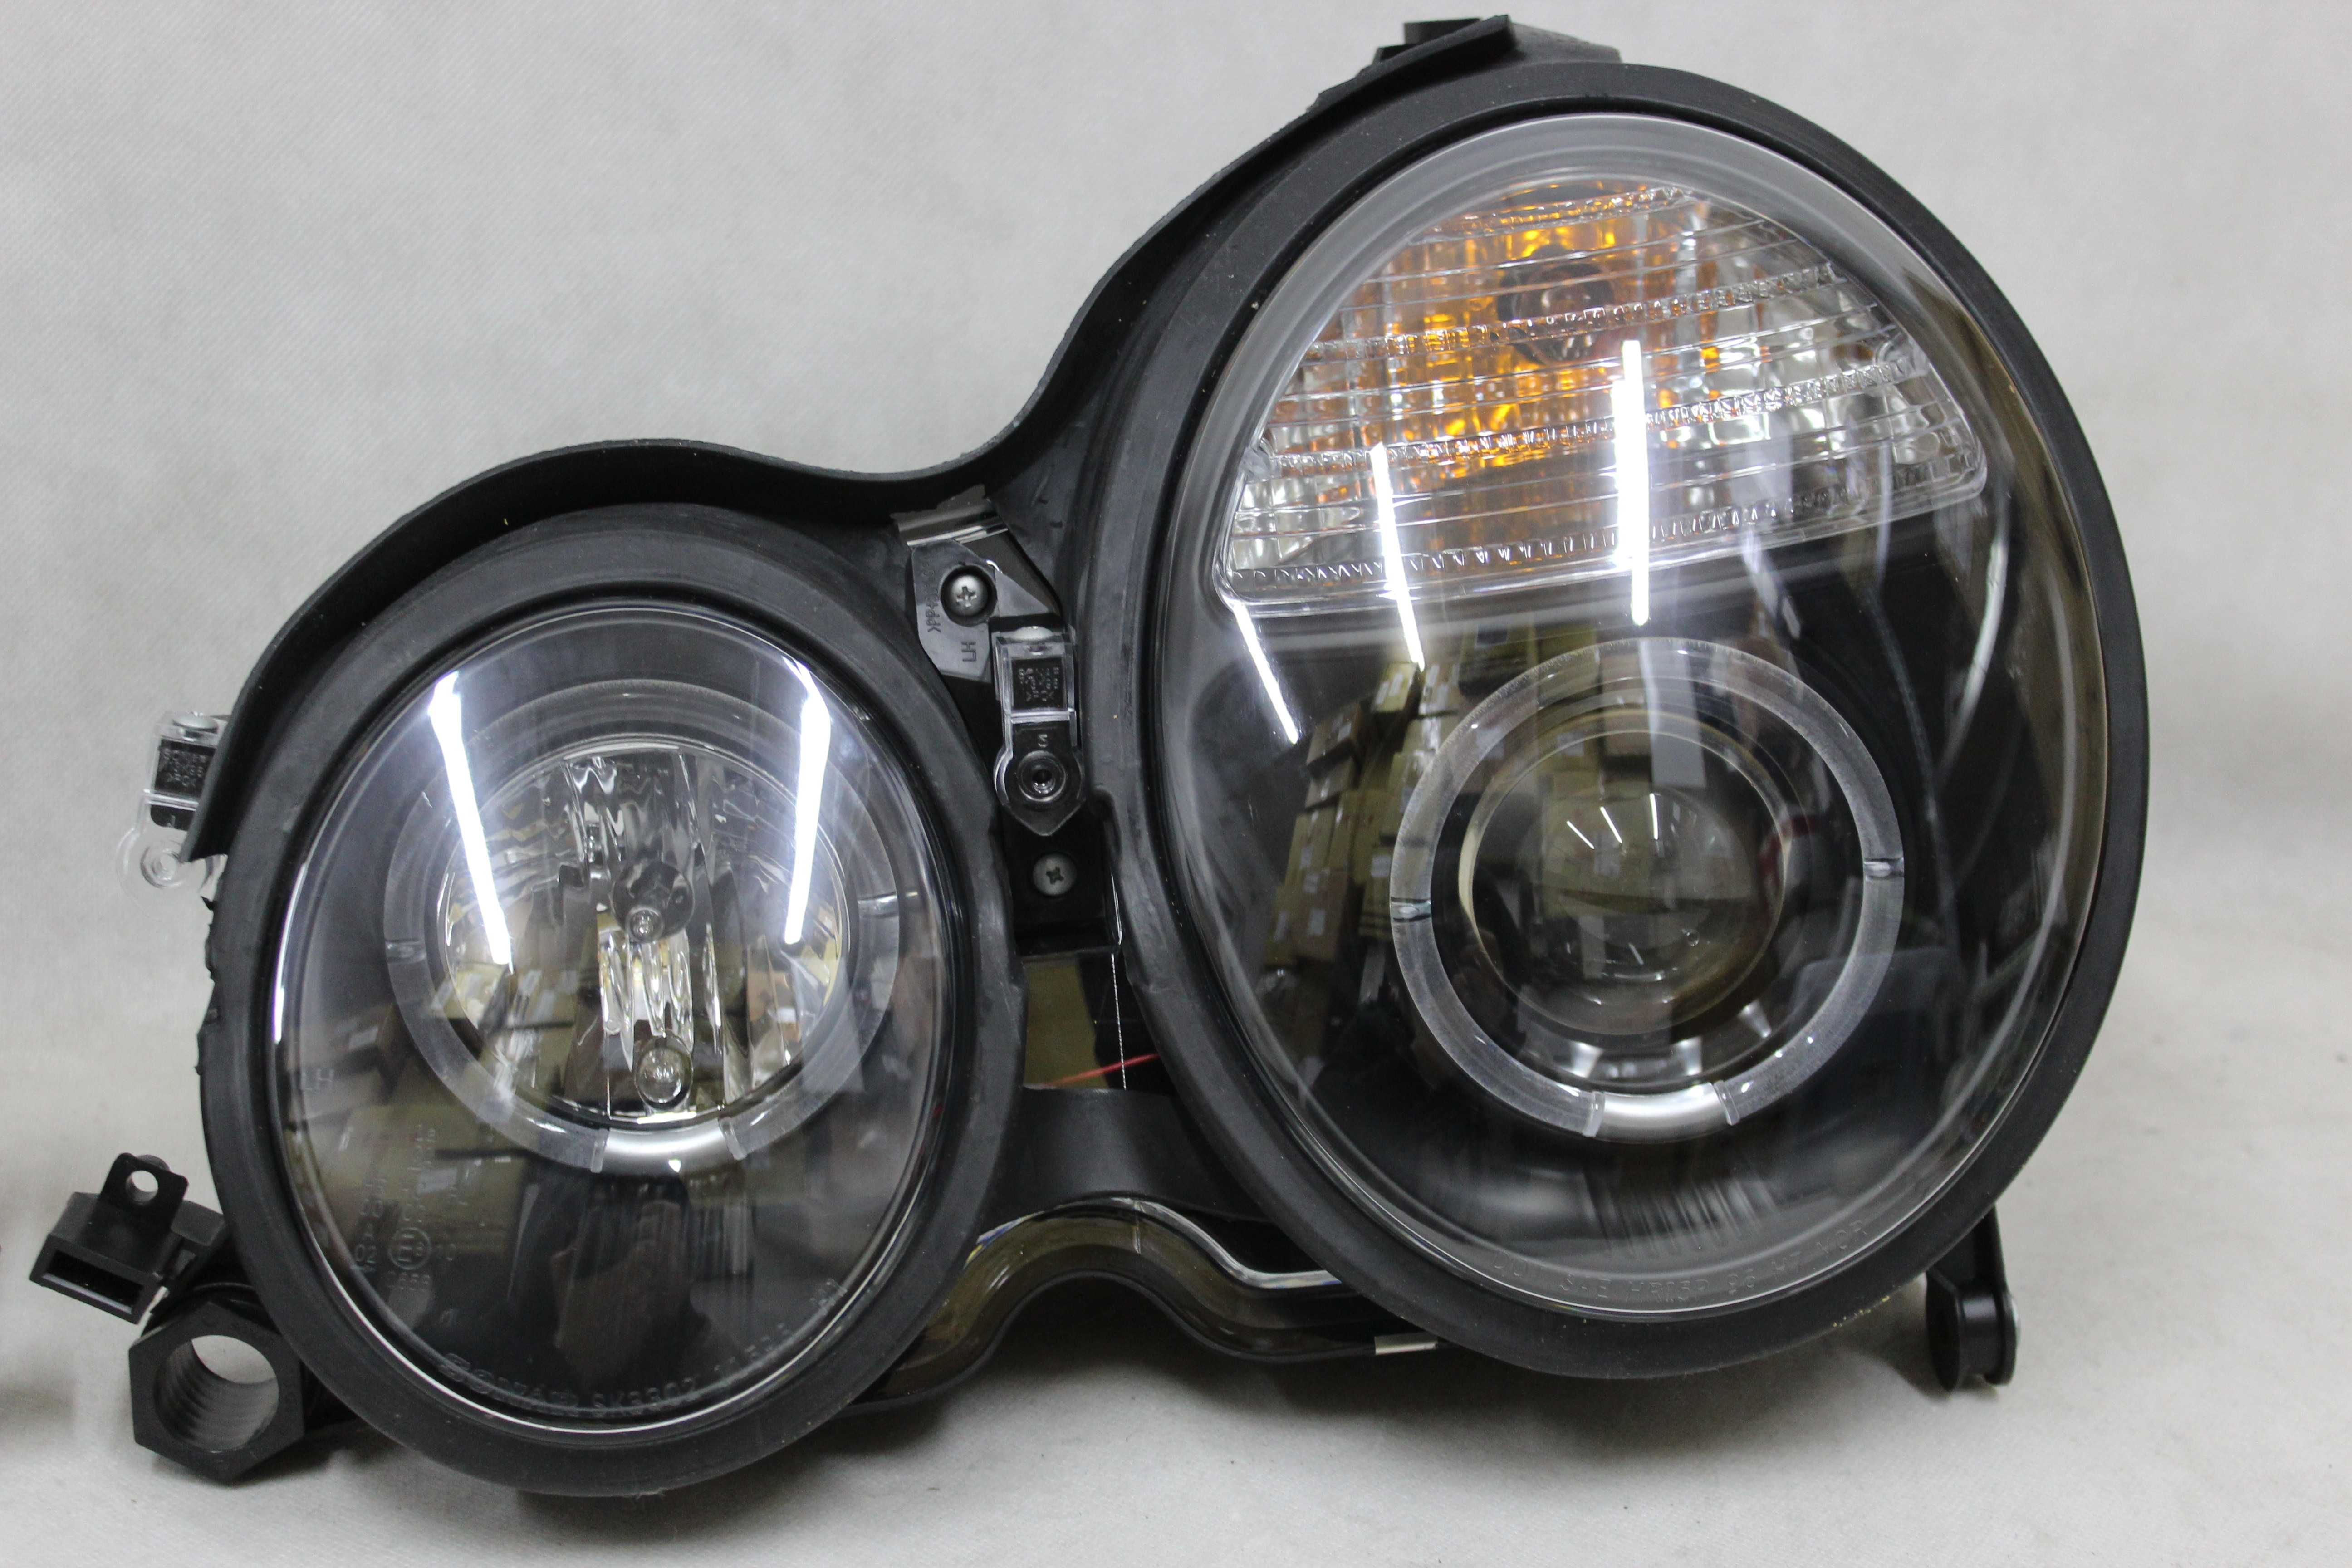 Lampy reflektory przednie przód MERCEDES E W210 r.97-02 LED RINGI NOWE